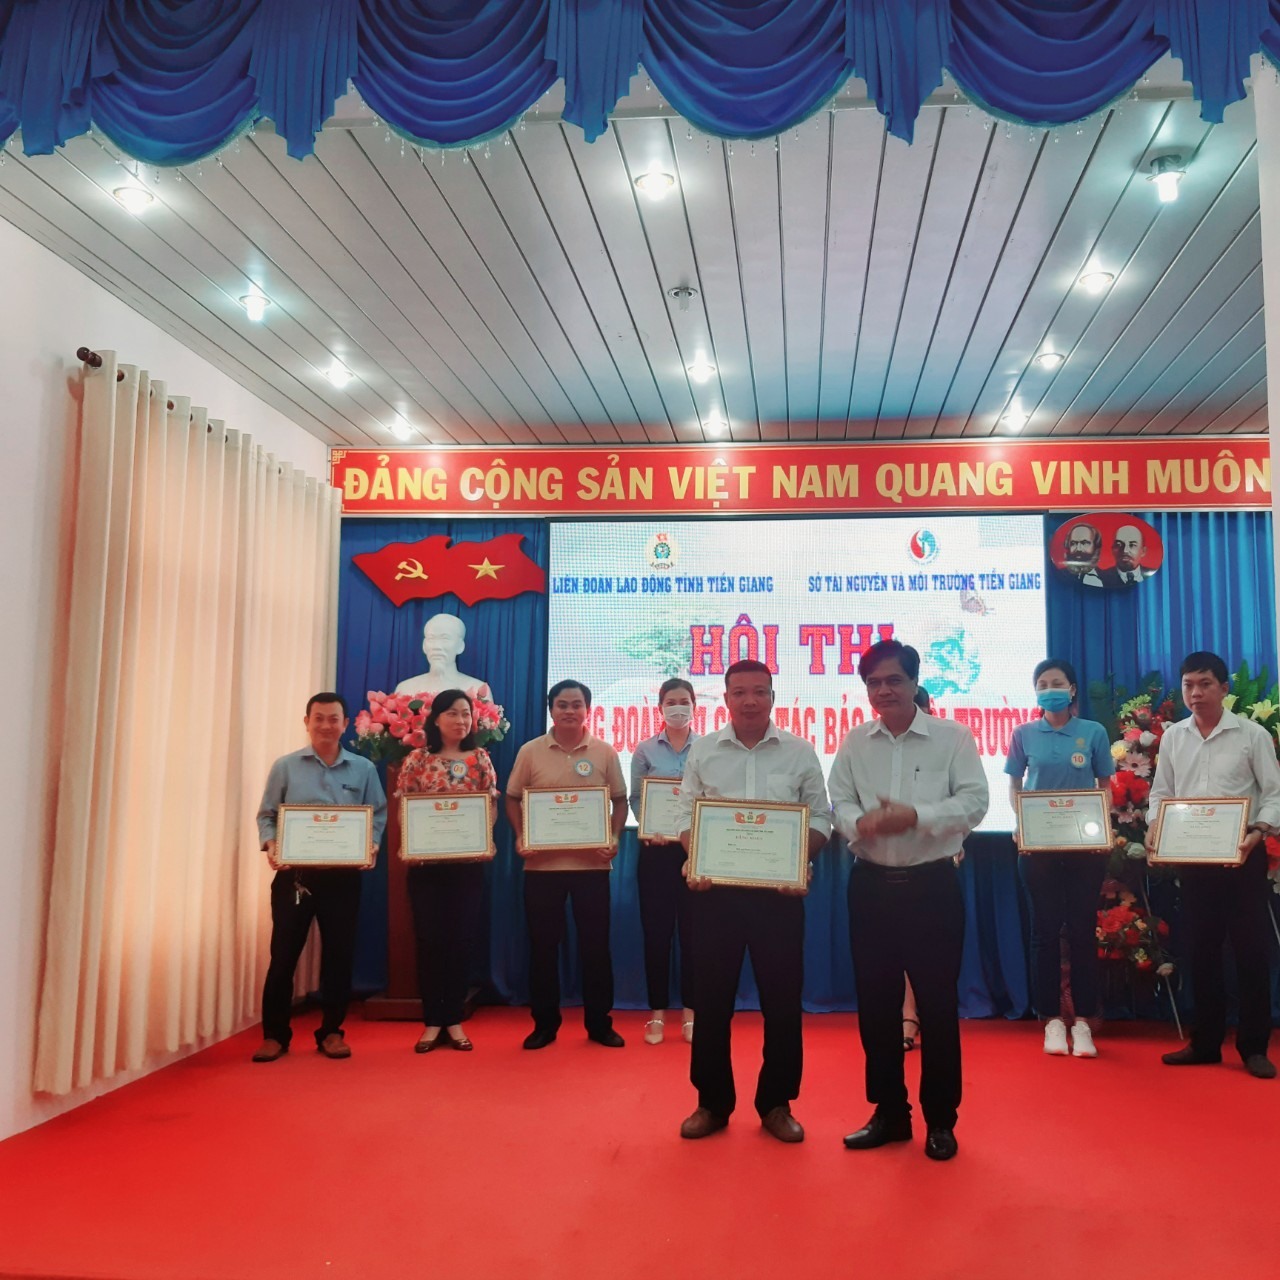 Lãnh đạo Sở TNMT tỉnh Tiền Giang trao thưởng cho đội đoạt giải nhất. Ảnh: T.G